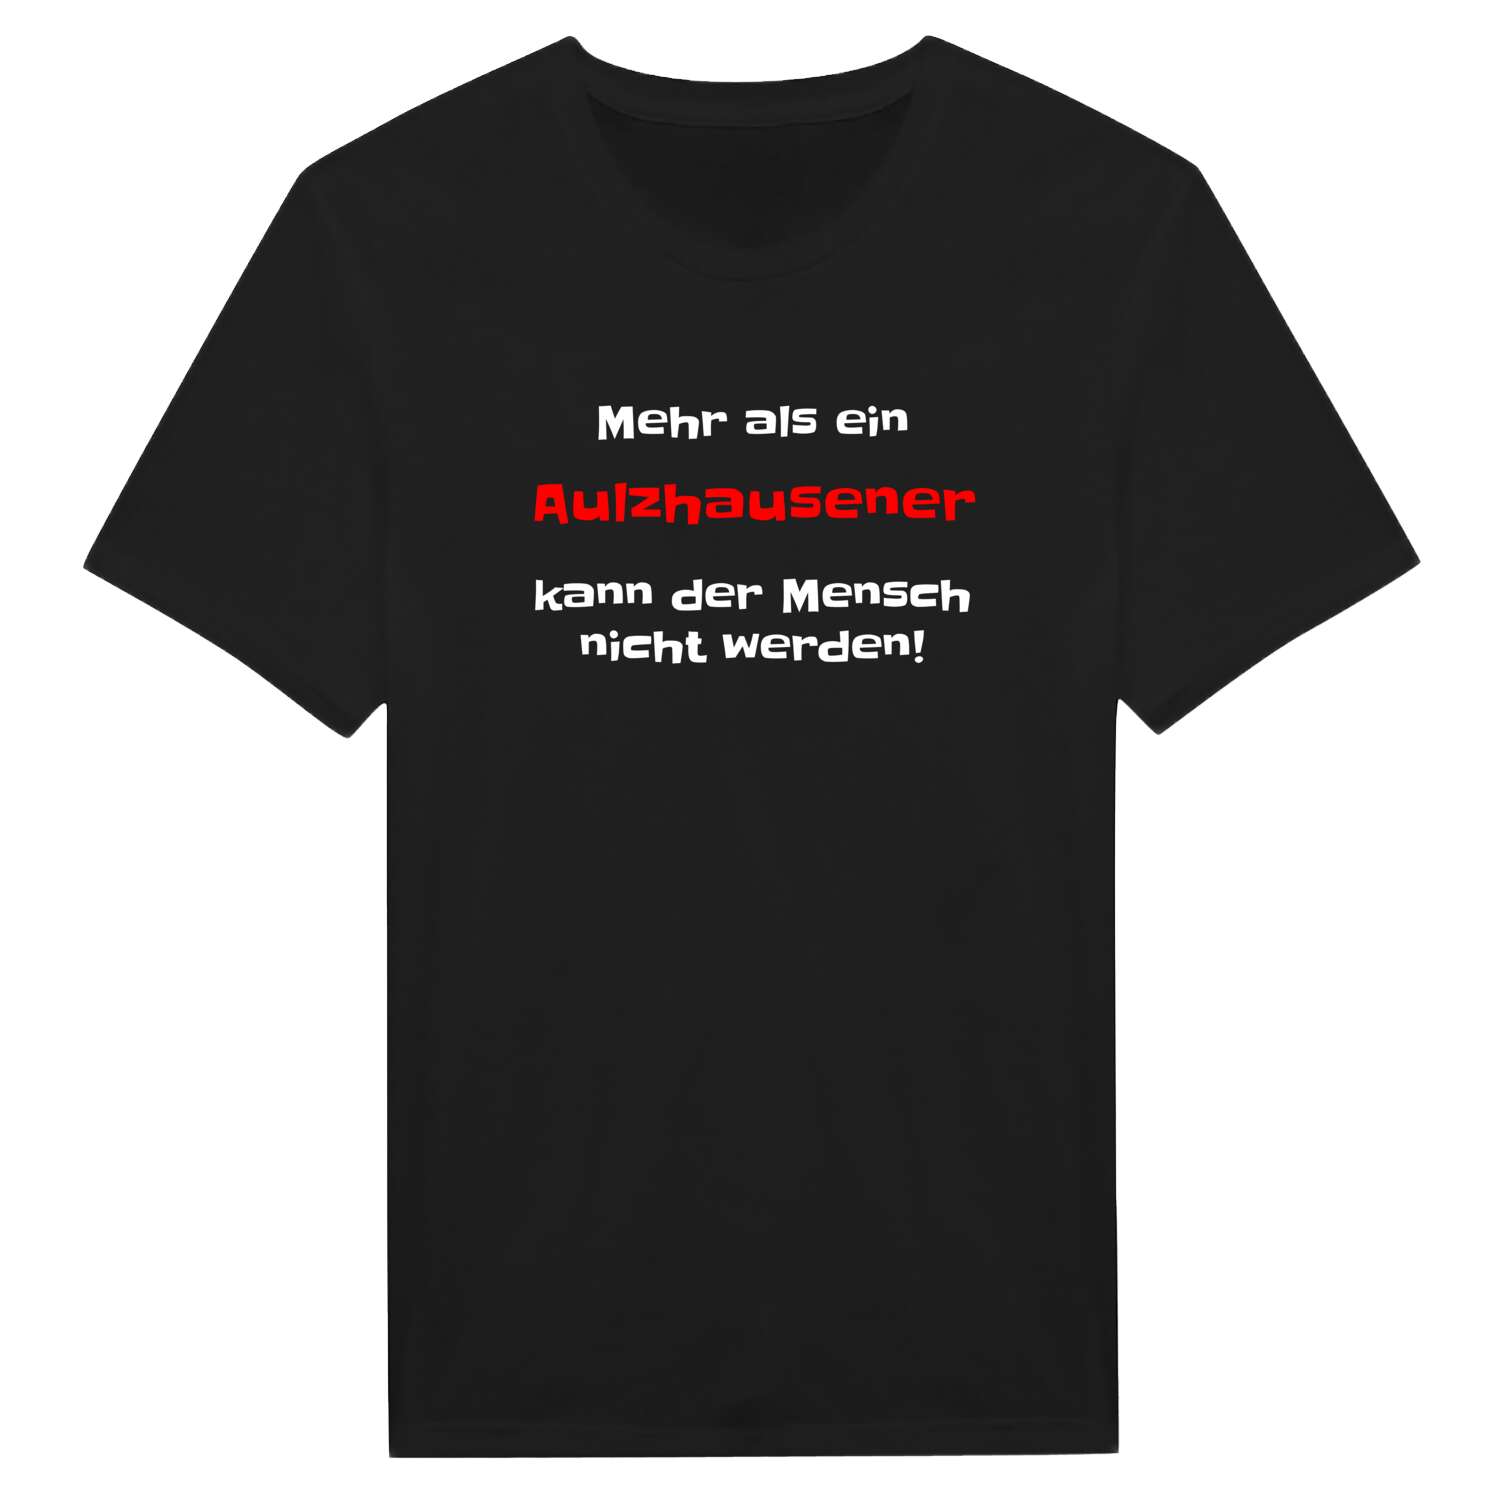 Aulzhausen T-Shirt »Mehr als ein«